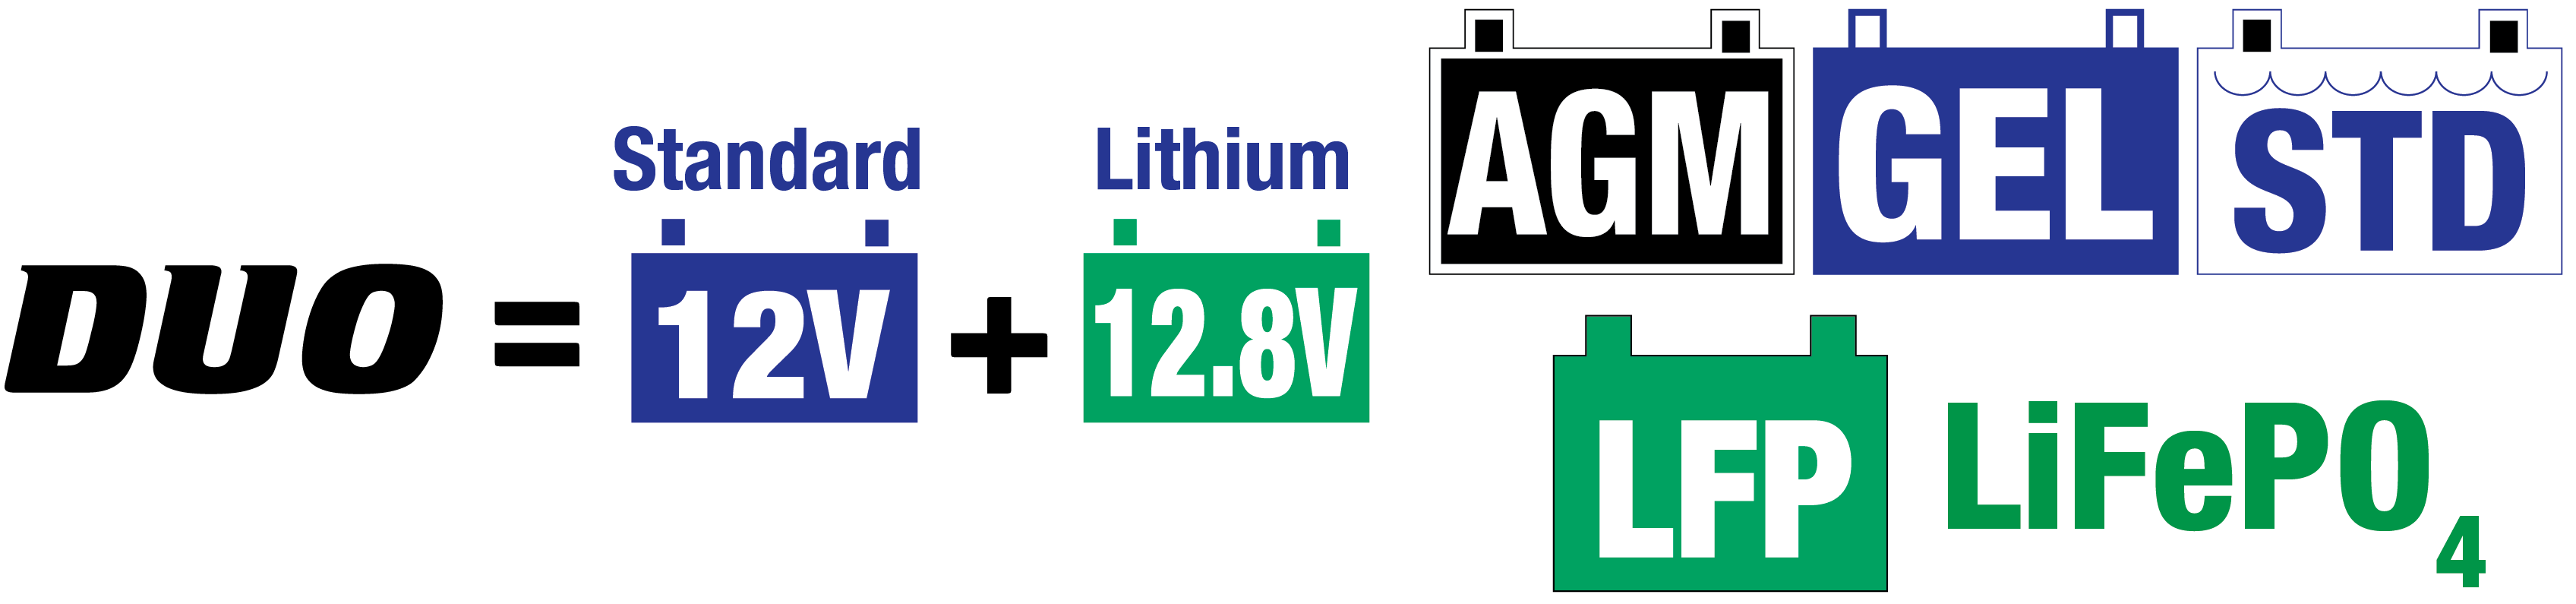 das solar ladegerät 12v ist ideal für 12V-Bleiakkus/12,8V-Lithium-Batterien